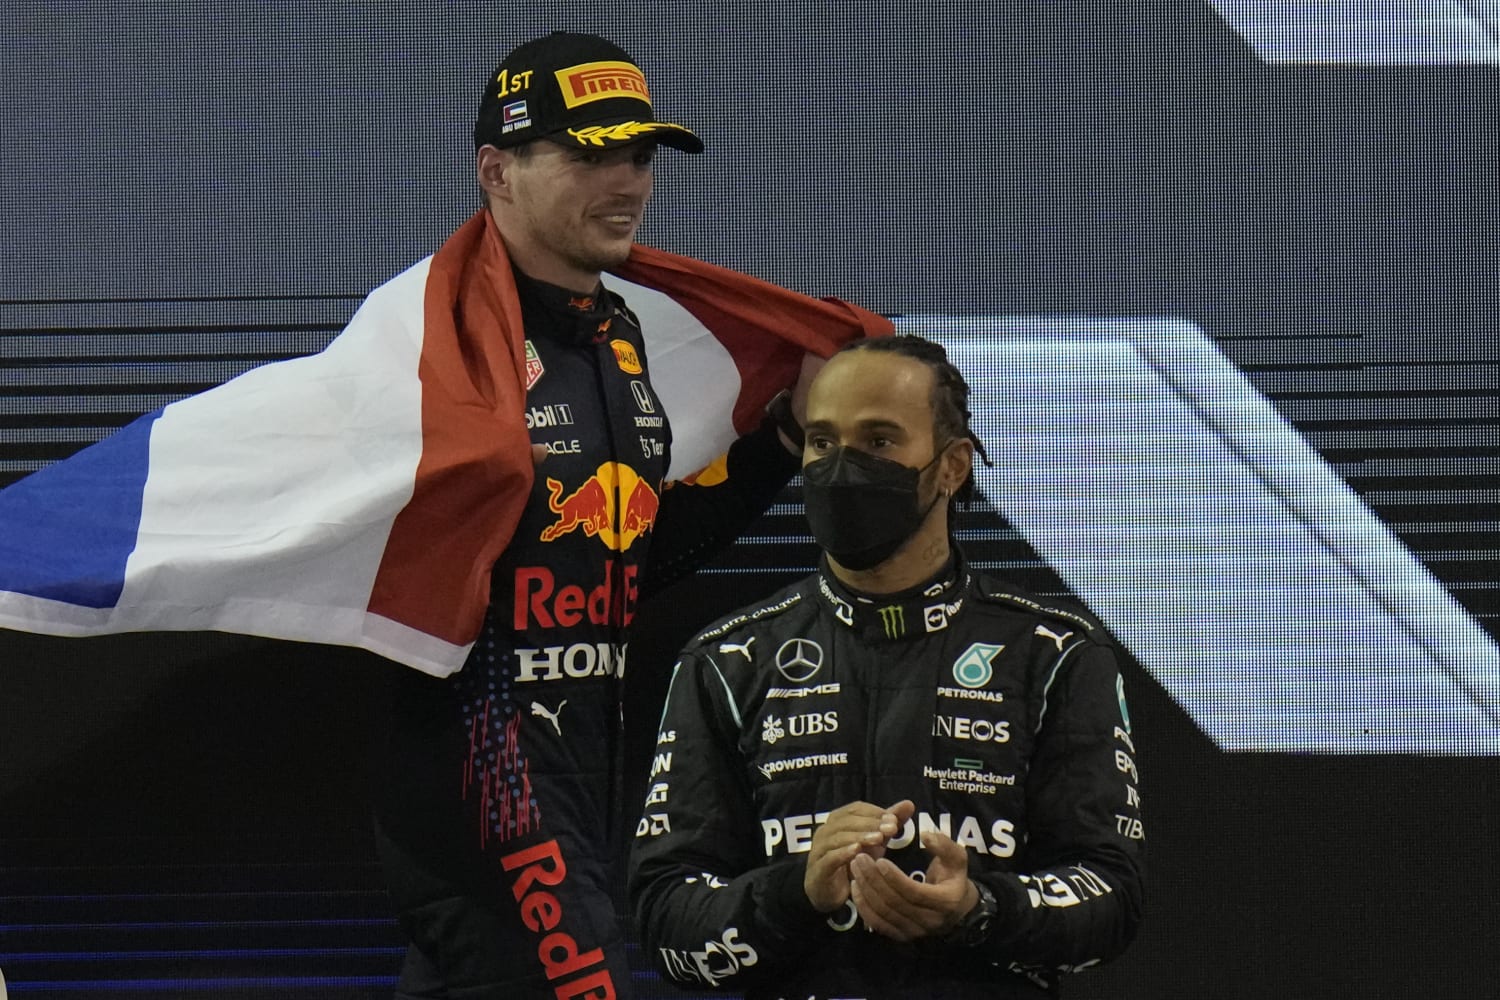 Verstappen wins 1st Formula 1 title with last lap pass of Hamilton